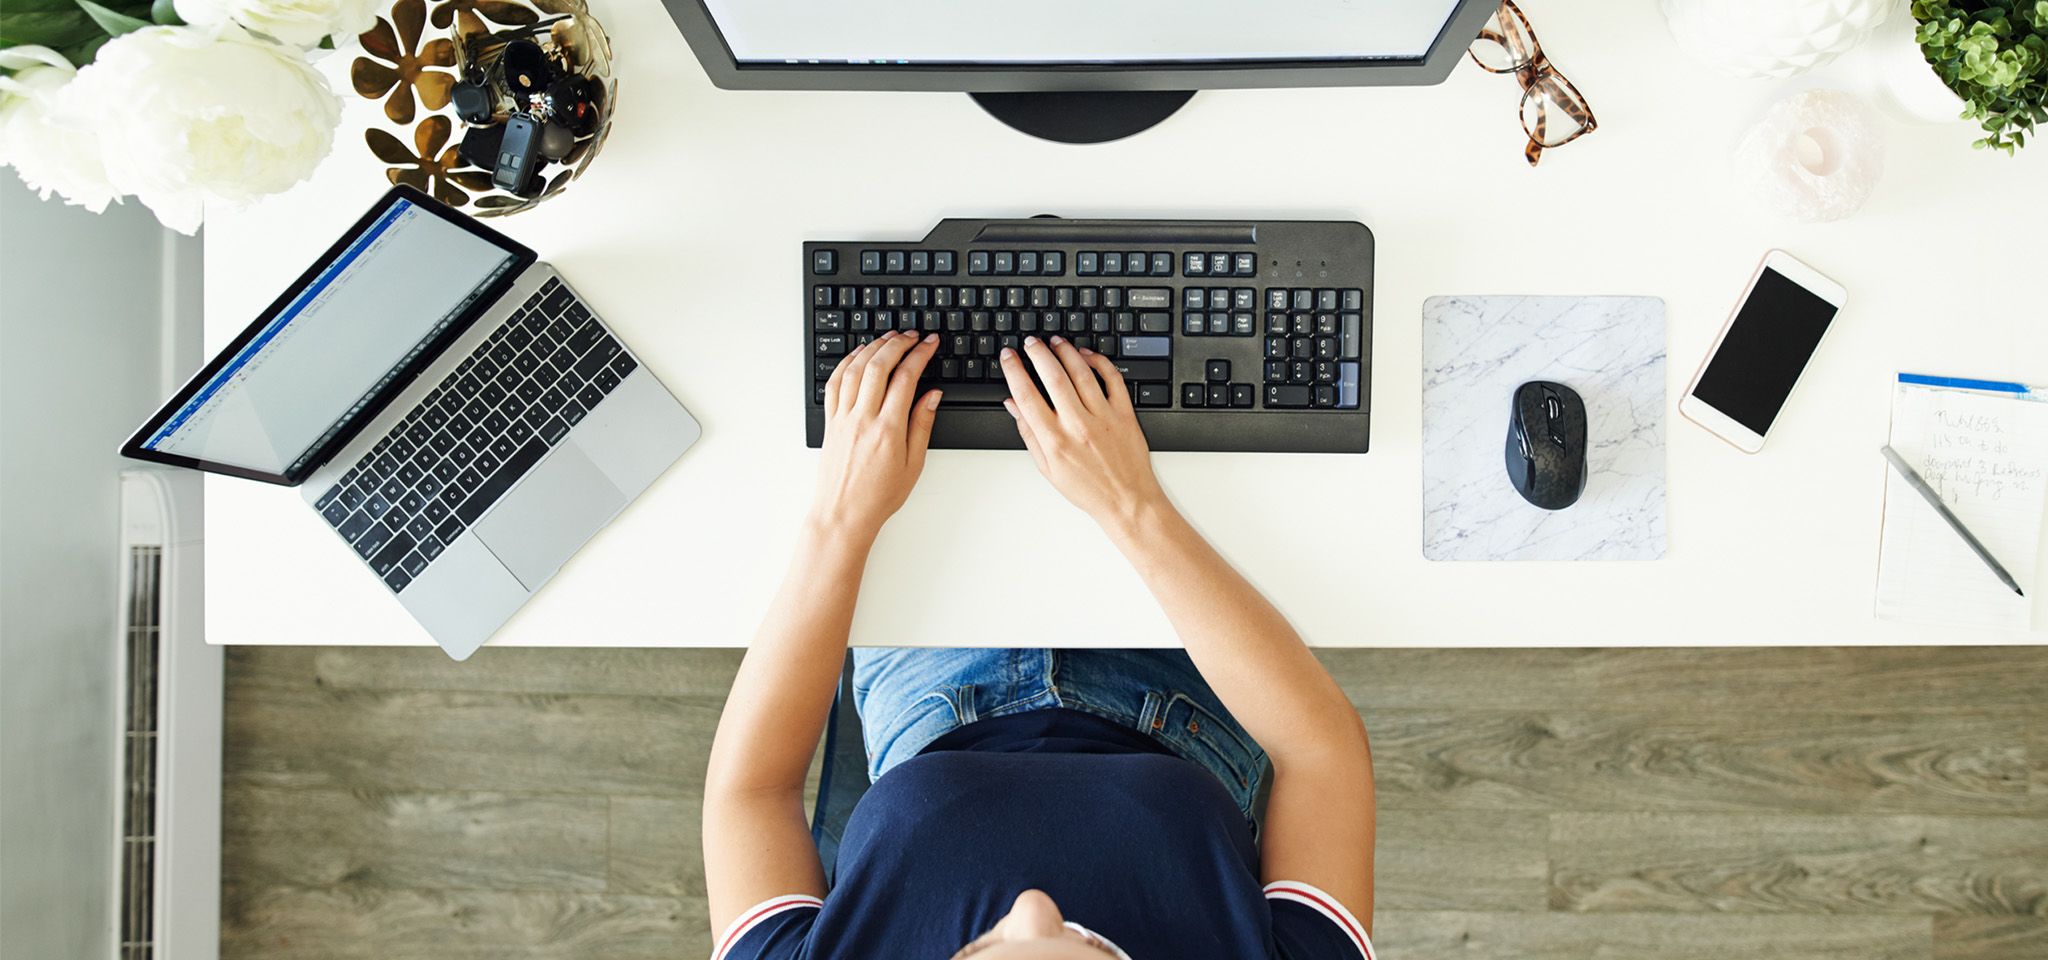 Üzerinde bir monitör, dizüstü bilgisayar, fare ve cep telefonu bulunan bir masada klavyede çalışan bir kişinin ellerinin üstten görünümü